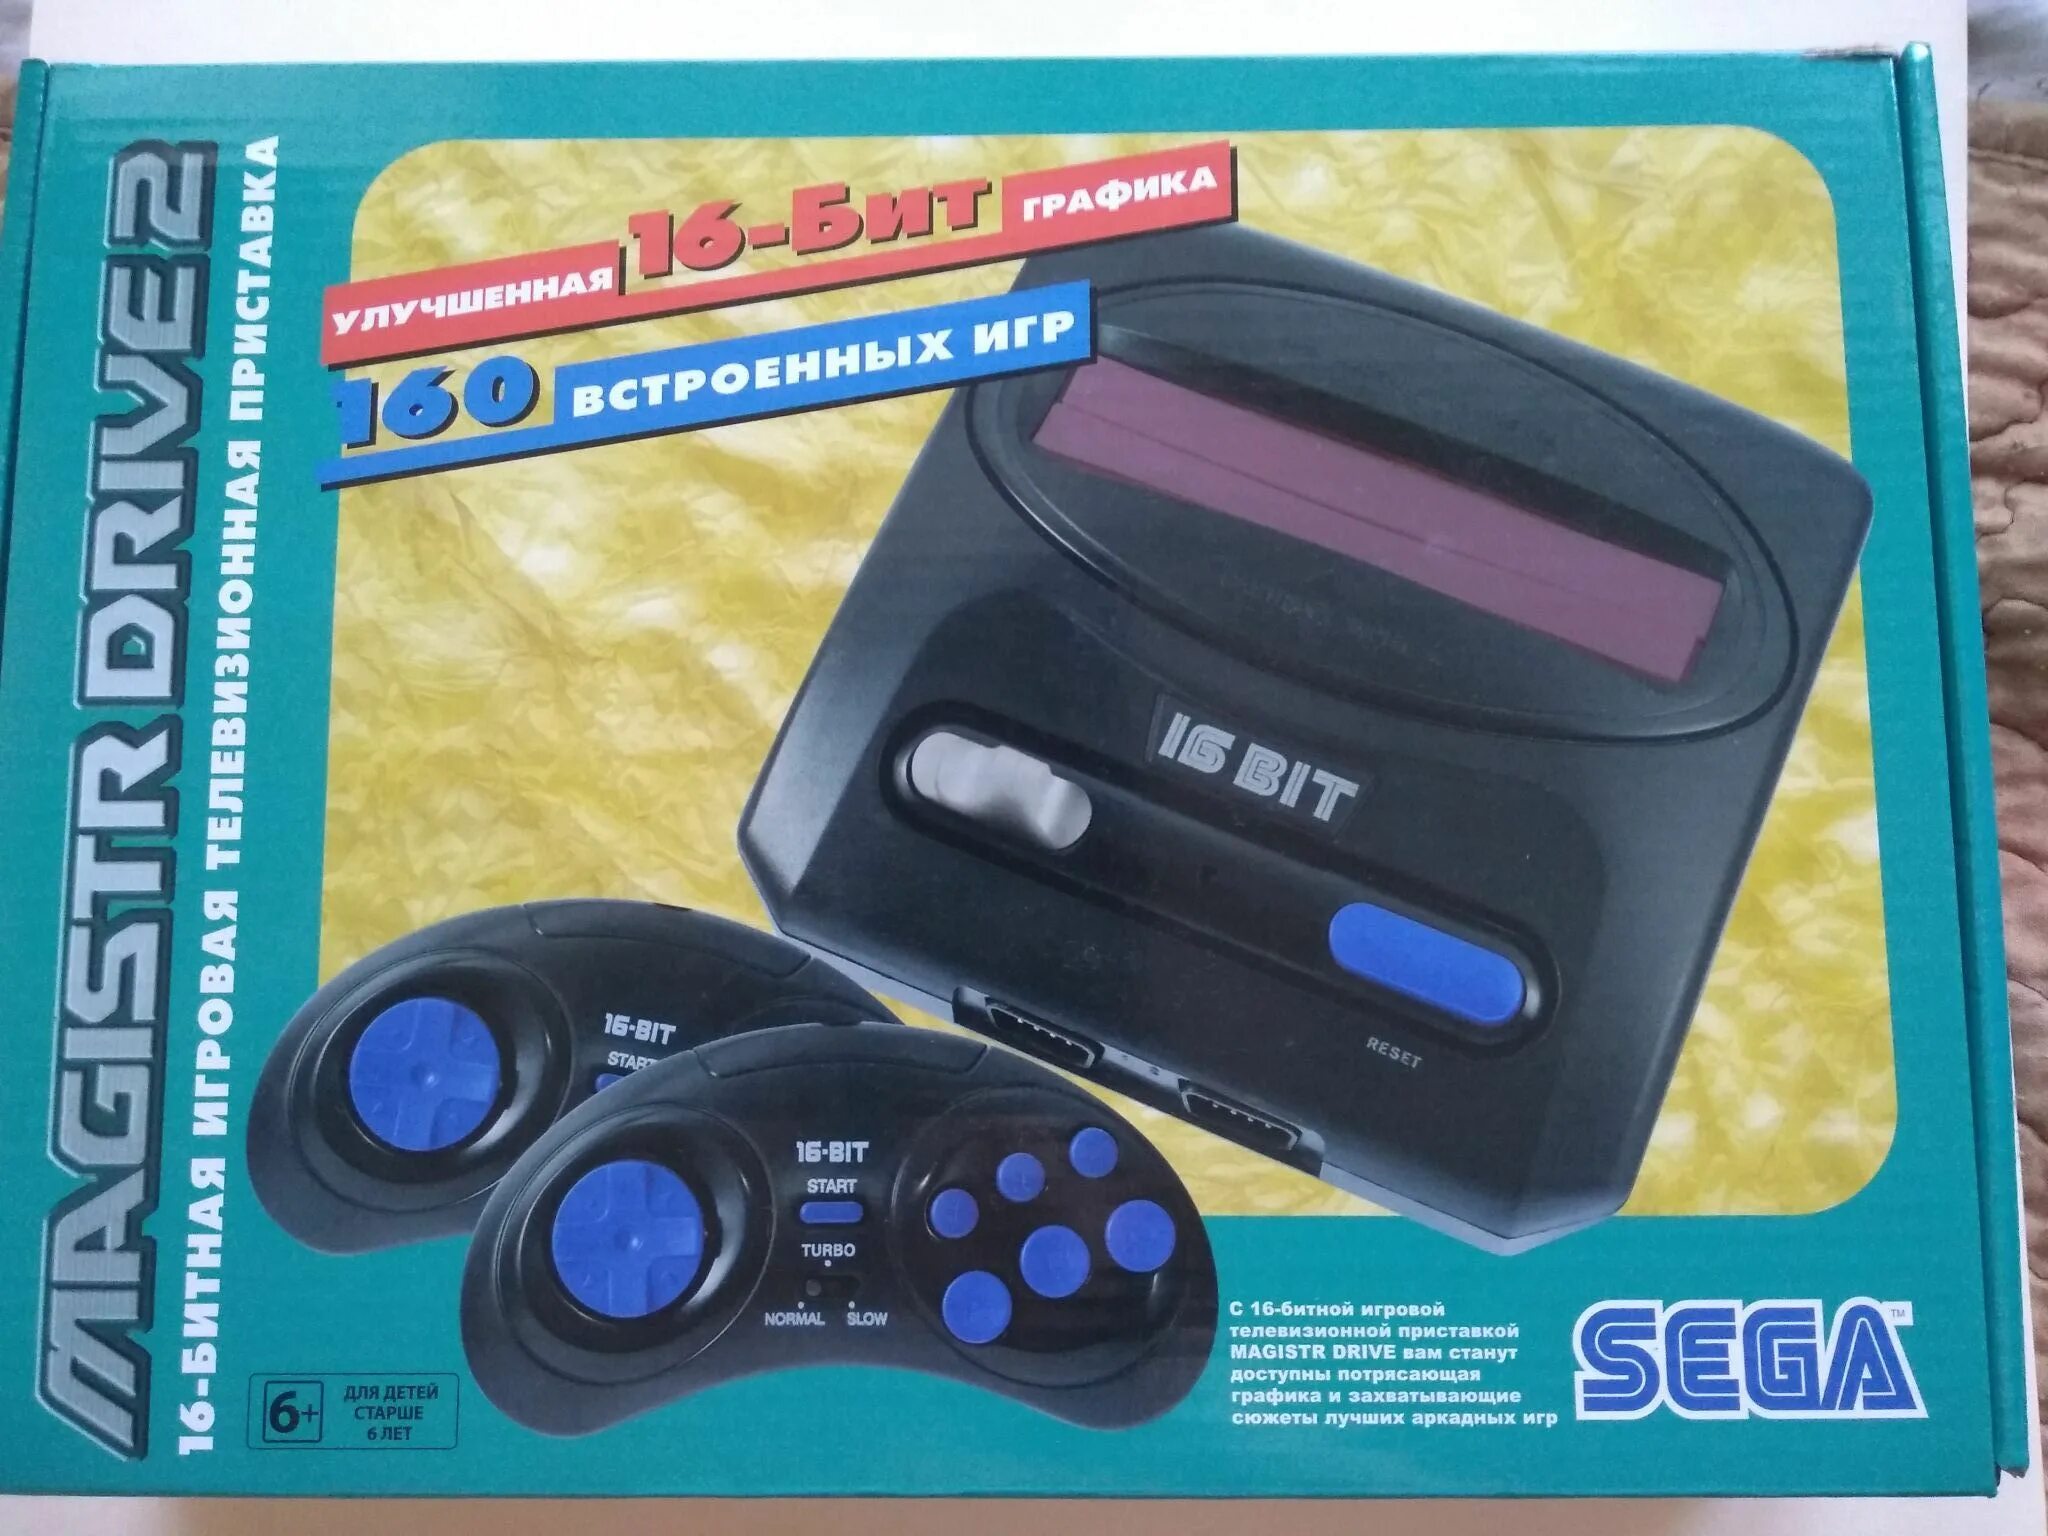 Игровая приставка Sega Magistr Drive 2 160 игр. Сега Магистр драйв 2. Sega Magistr Drive 2. Сега Magistr Drive 16 bit. Игры magistr drive